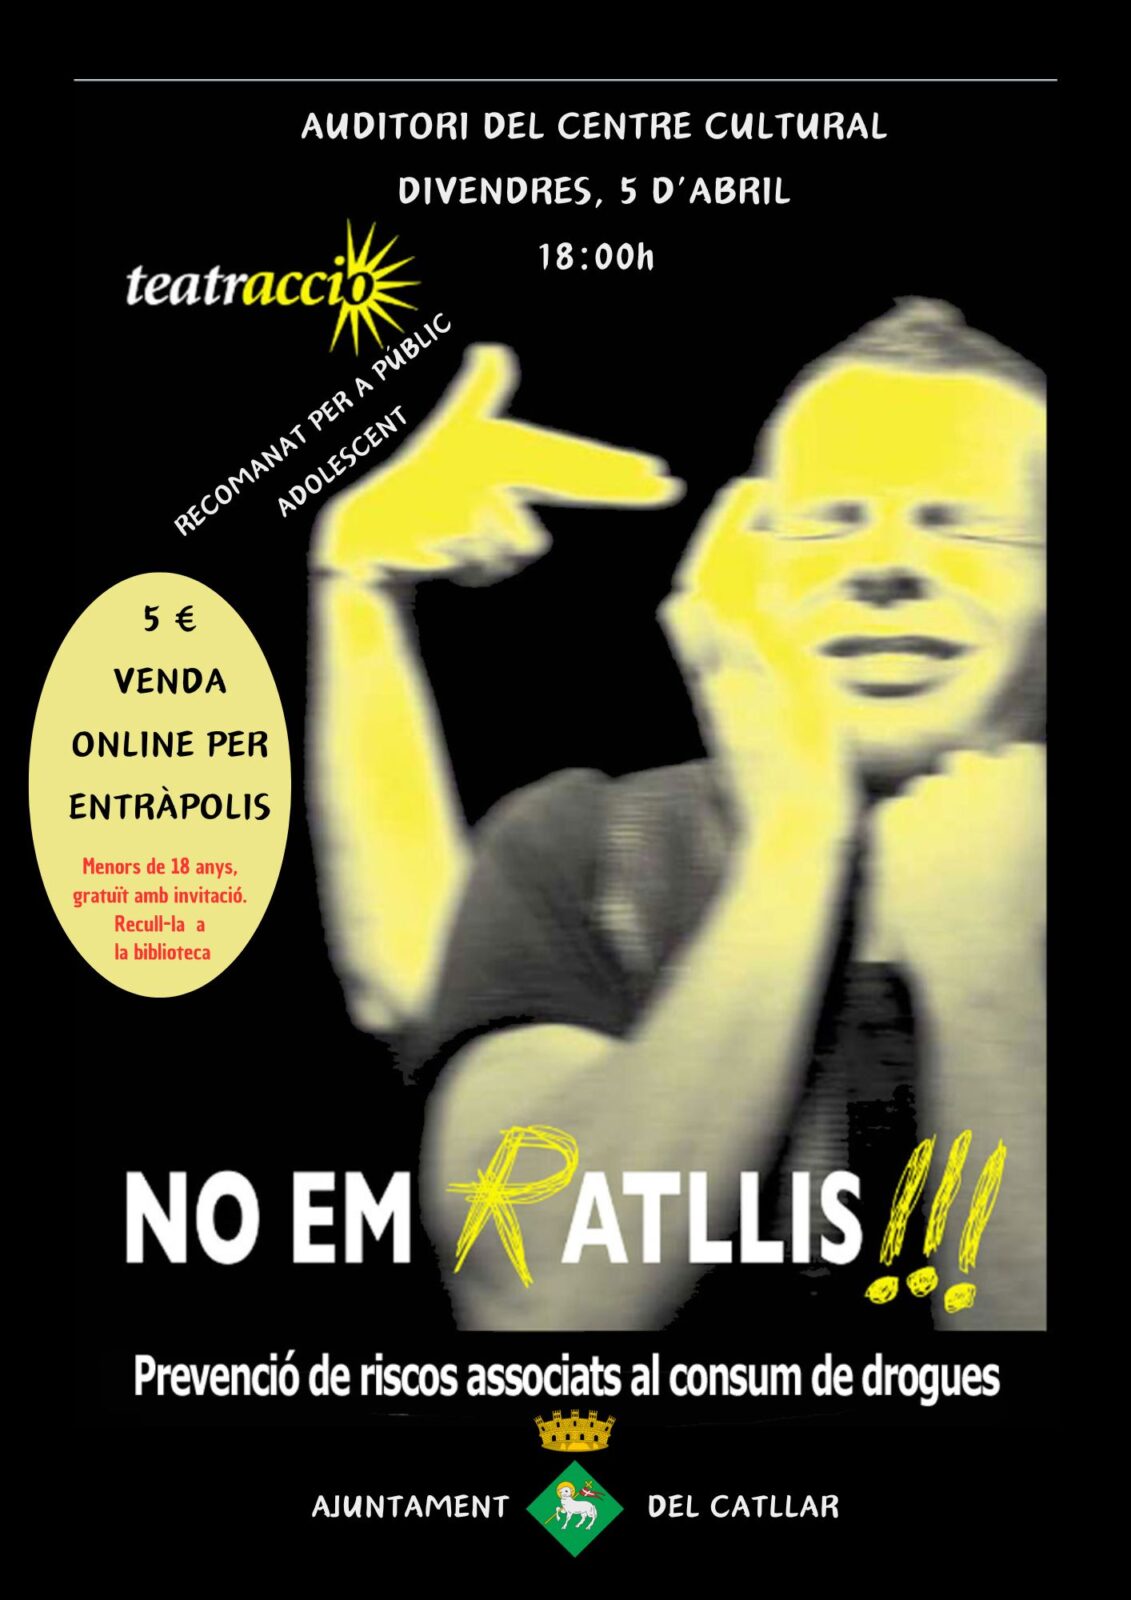 TEATRO: NO EM RATLLIS !!!